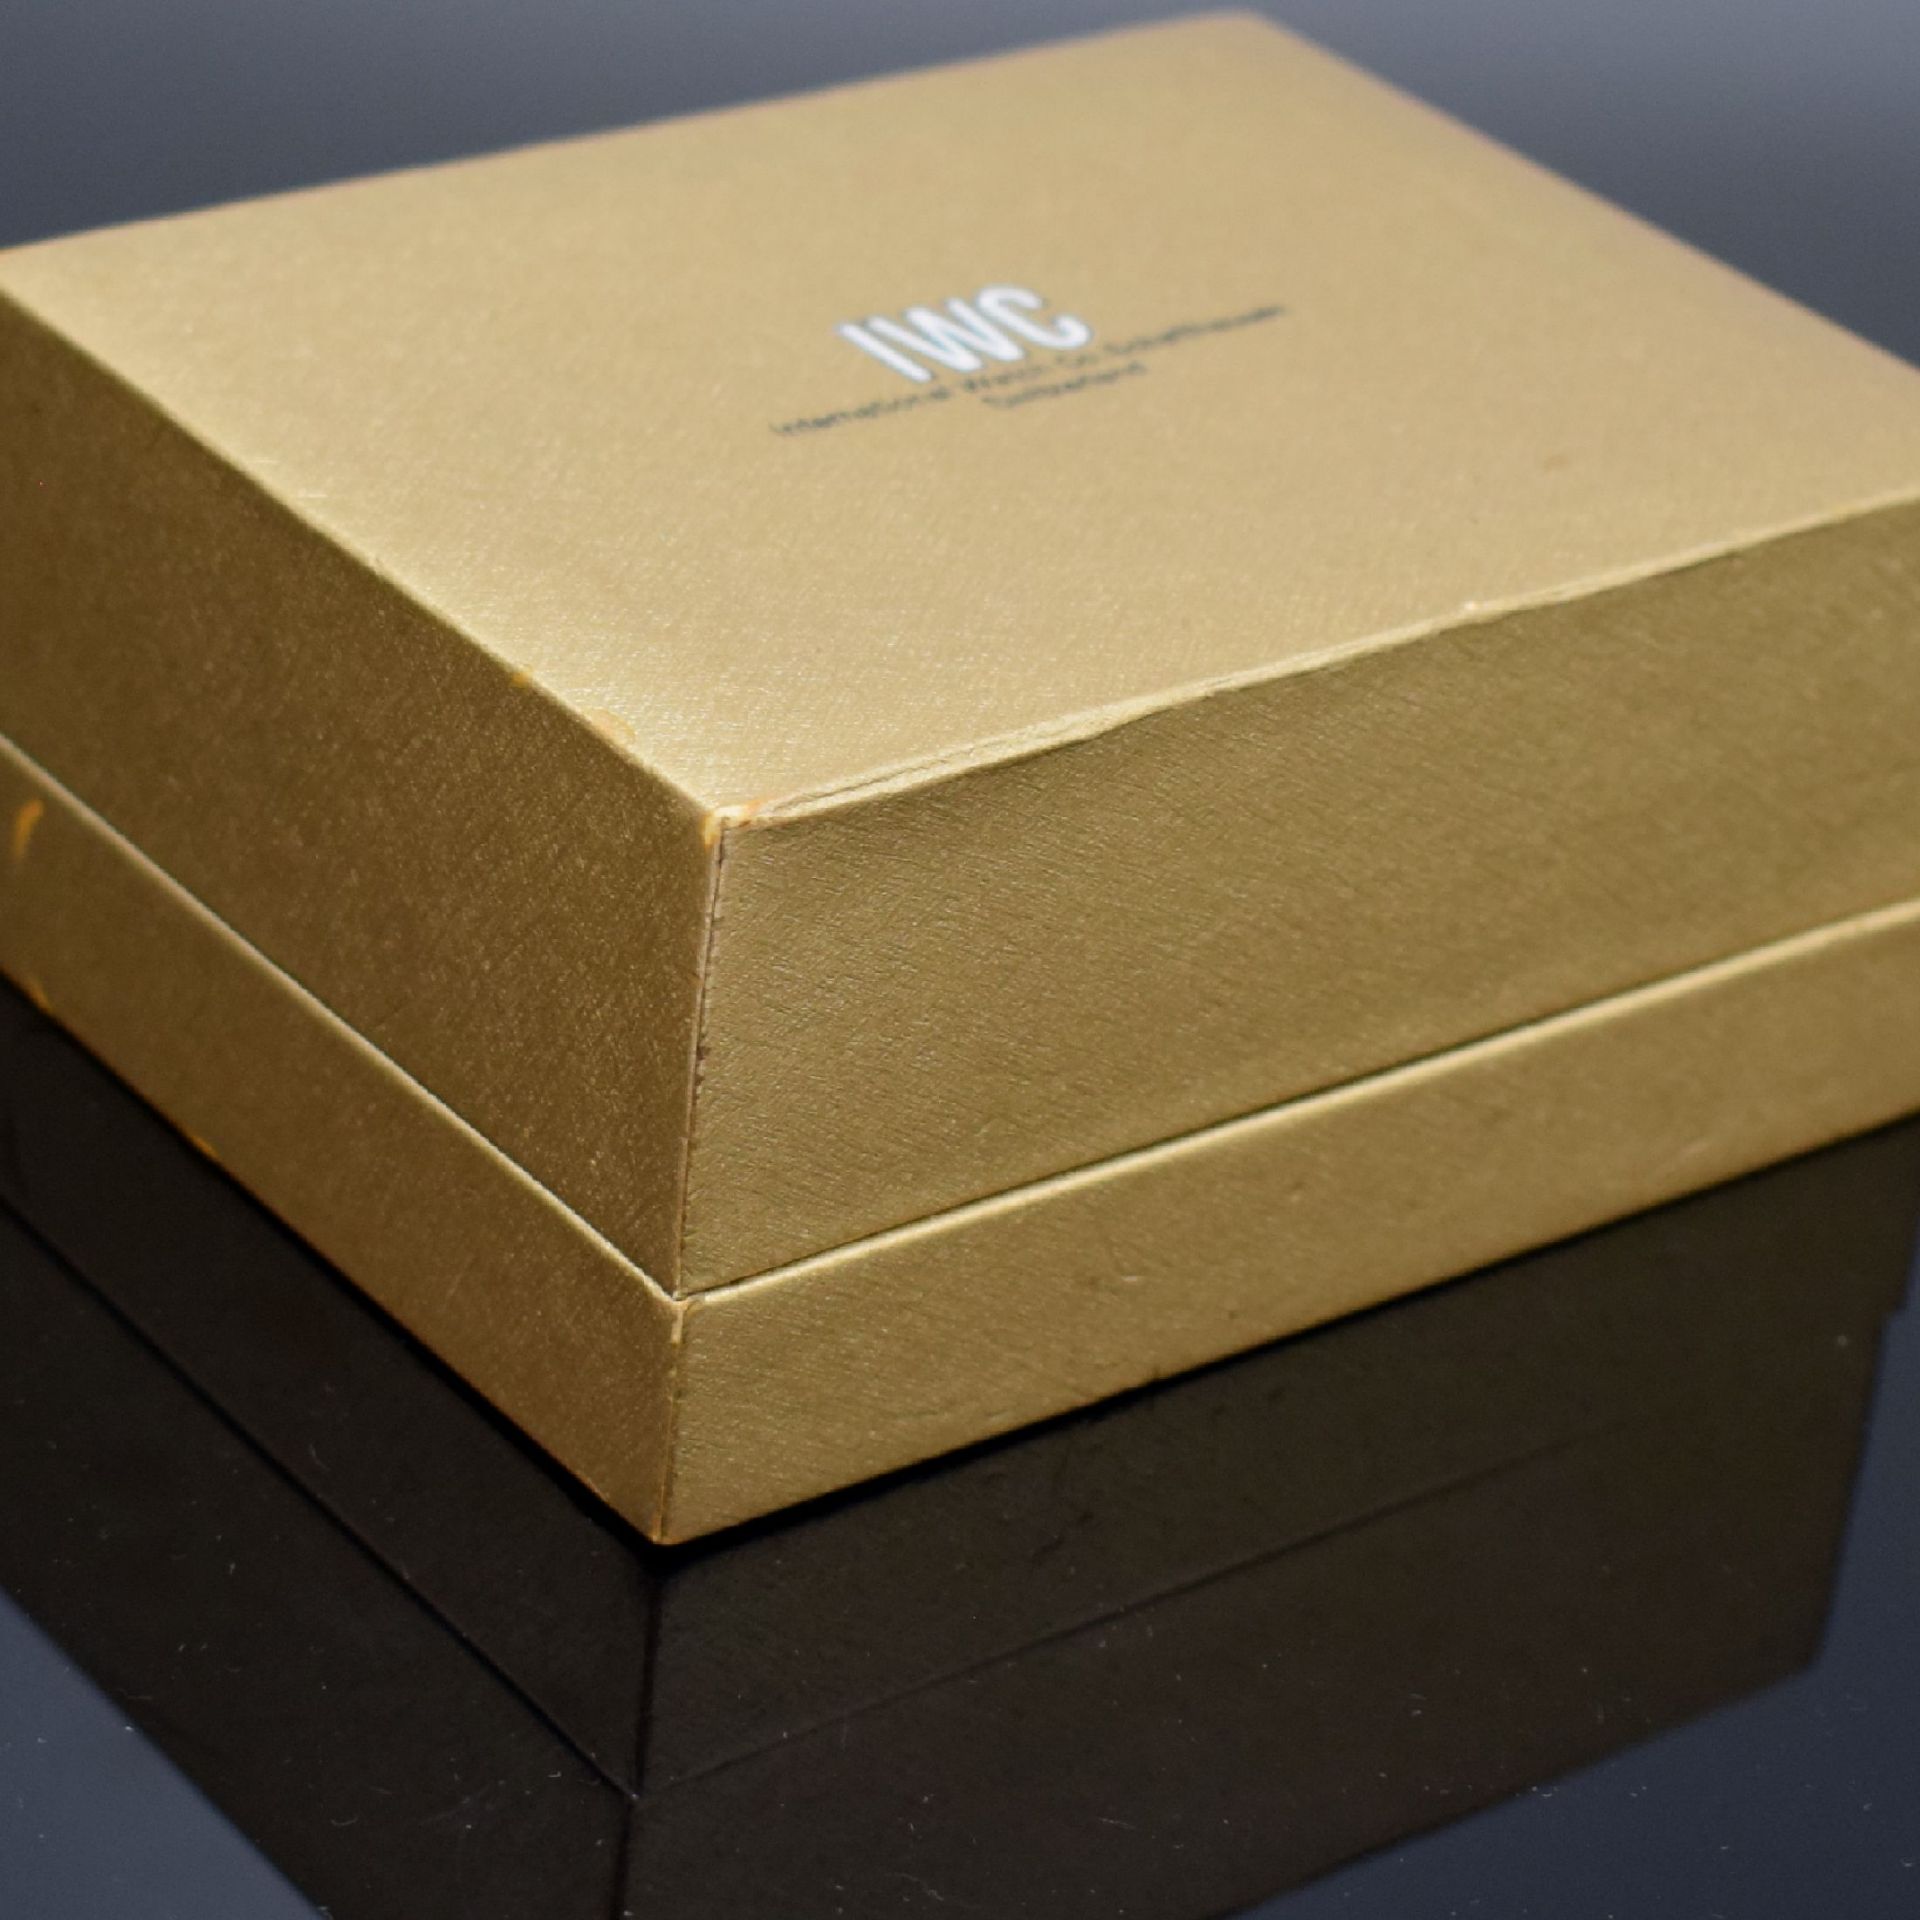 IWC seltene goldene Box für Armbanduhr, Schweiz um 1965, - Image 5 of 6